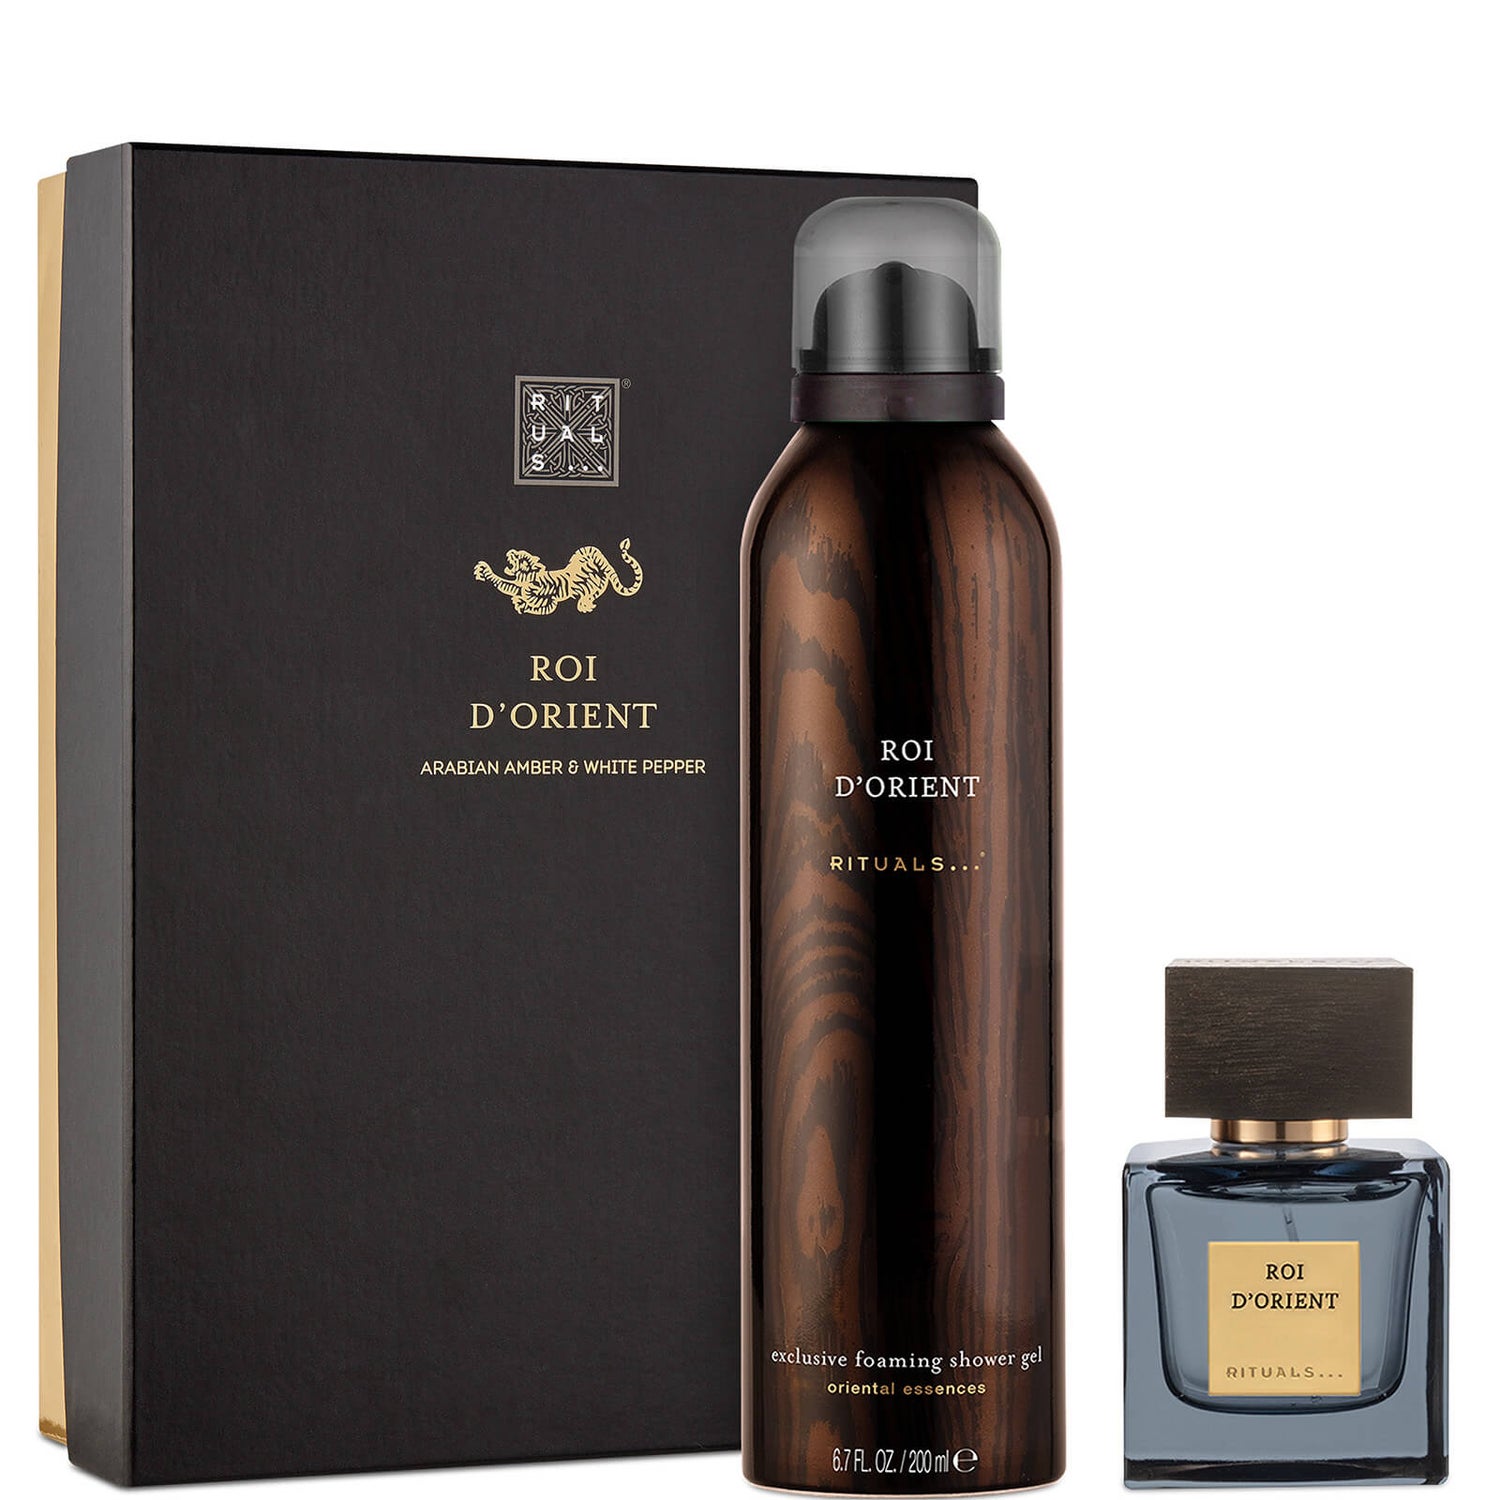 Rituals Roi d'Orient Shower Foam and Eau de Parfum Set - LOOKFANTASTIC